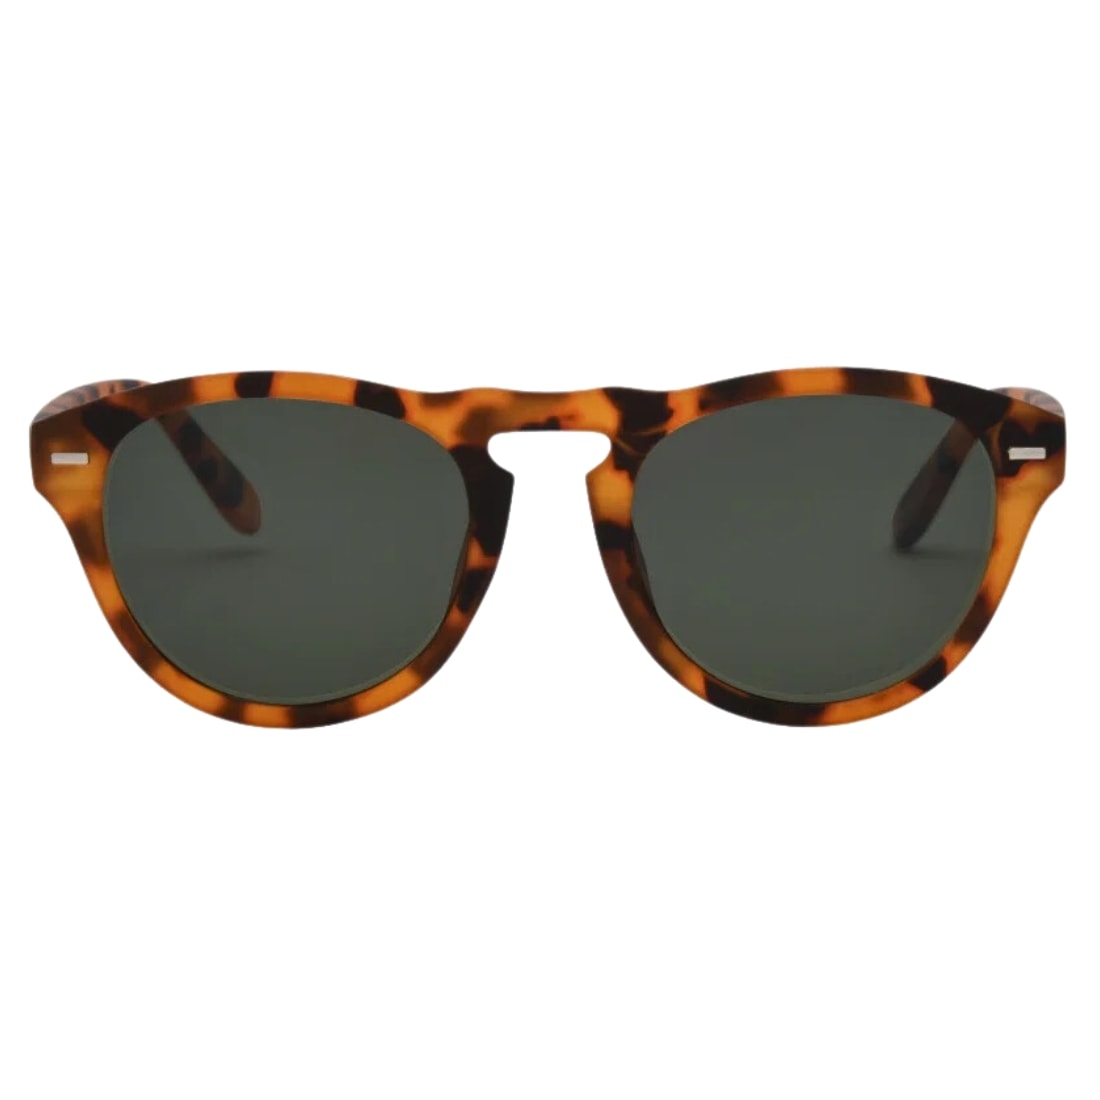 I-Sea Swell Round Polarised Sunglasses - Honey Tortoise/Smoke Polarized Lens